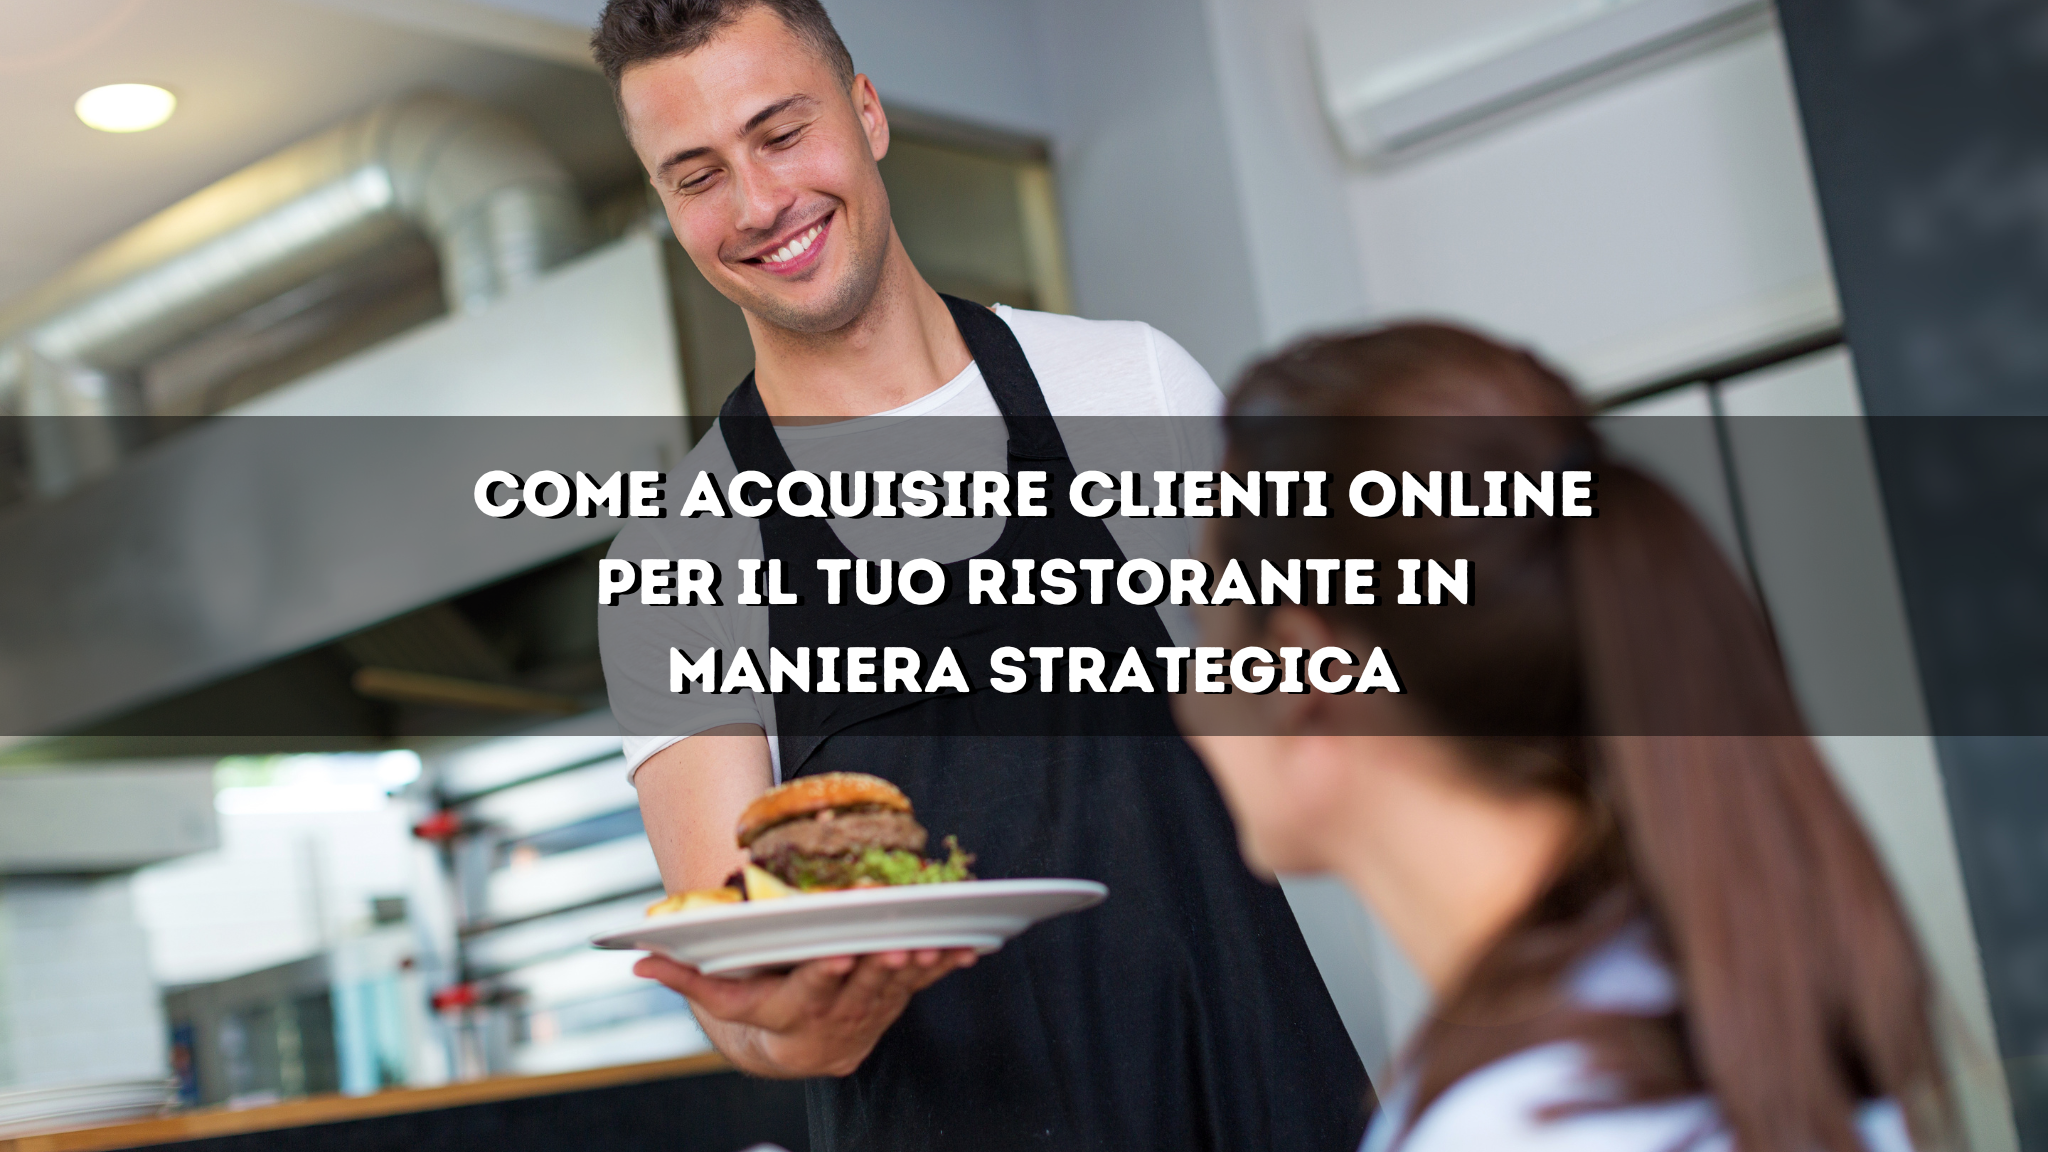 You are currently viewing Come acquisire clienti online per il tuo ristorante in maniera strategica